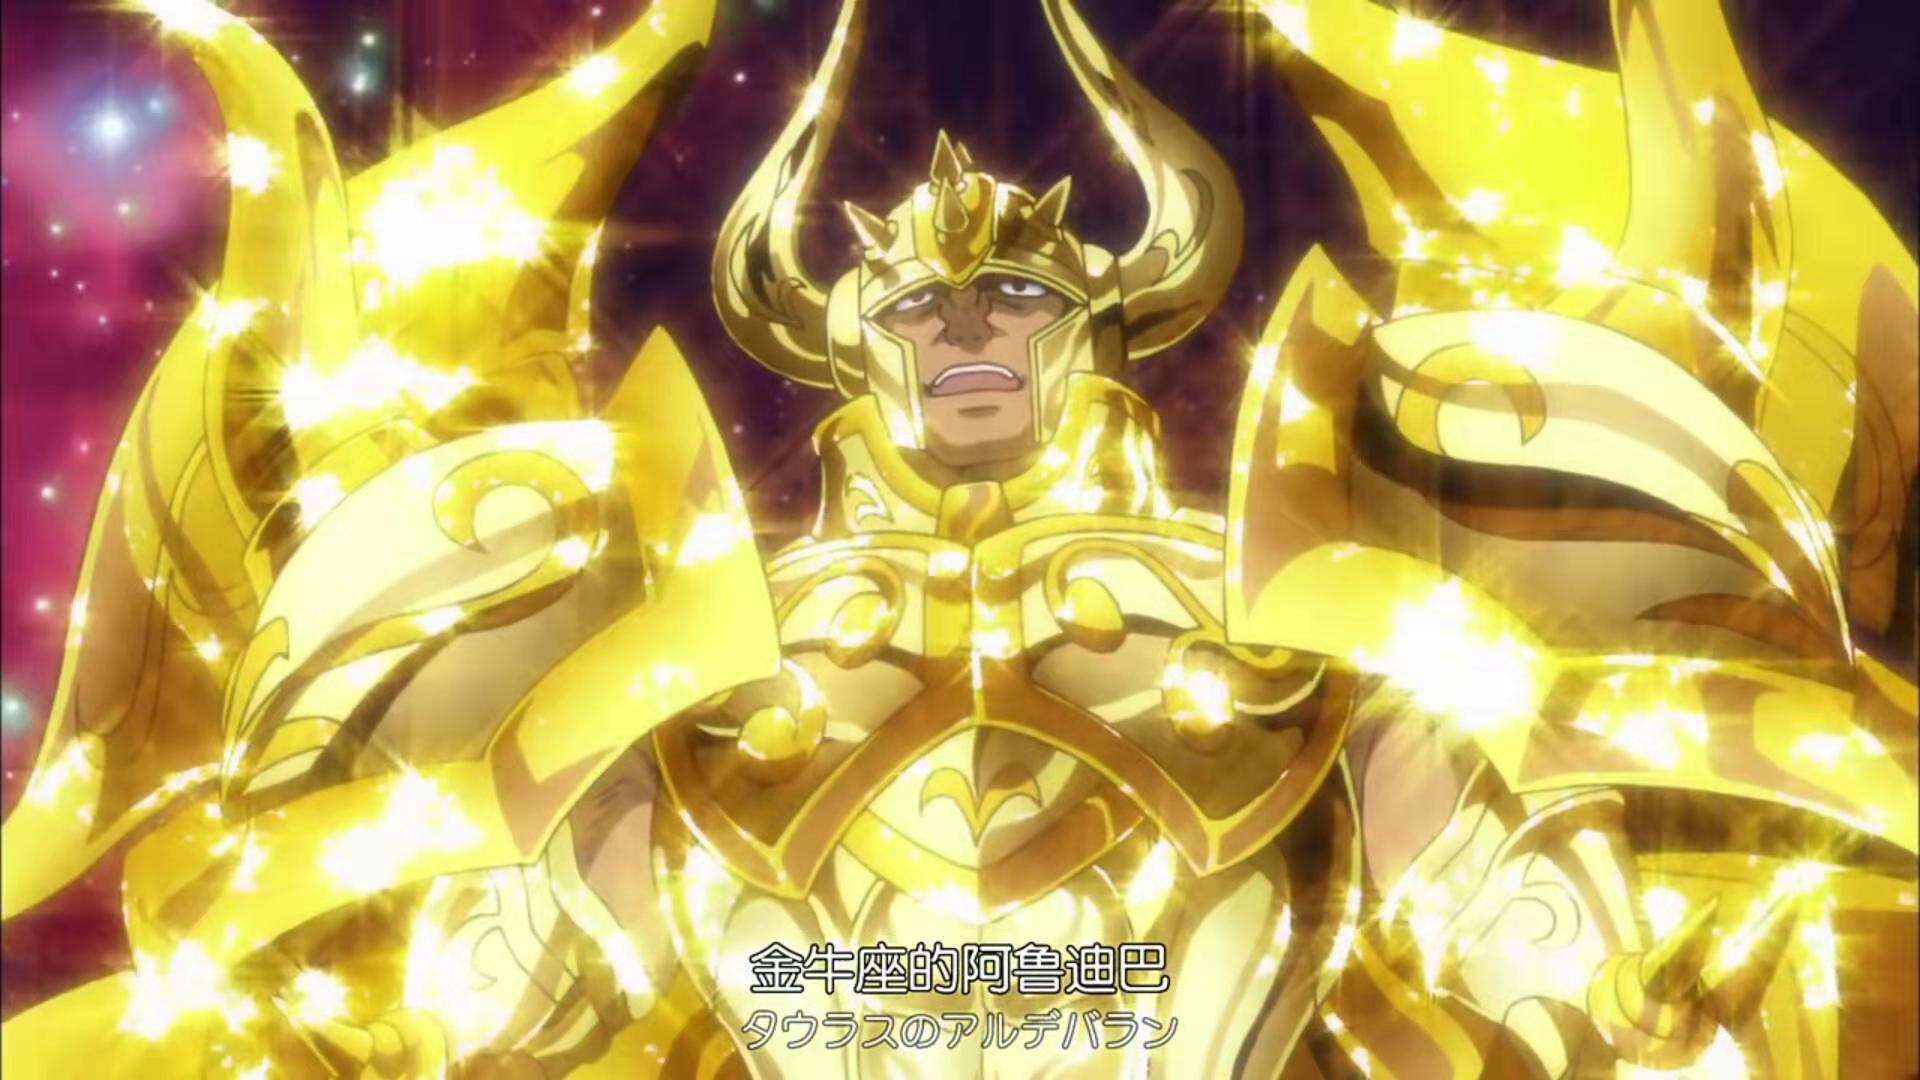 圣斗士星矢黄金魂:黄金圣斗士集体开神圣黄金衣,你觉得哪个最帅